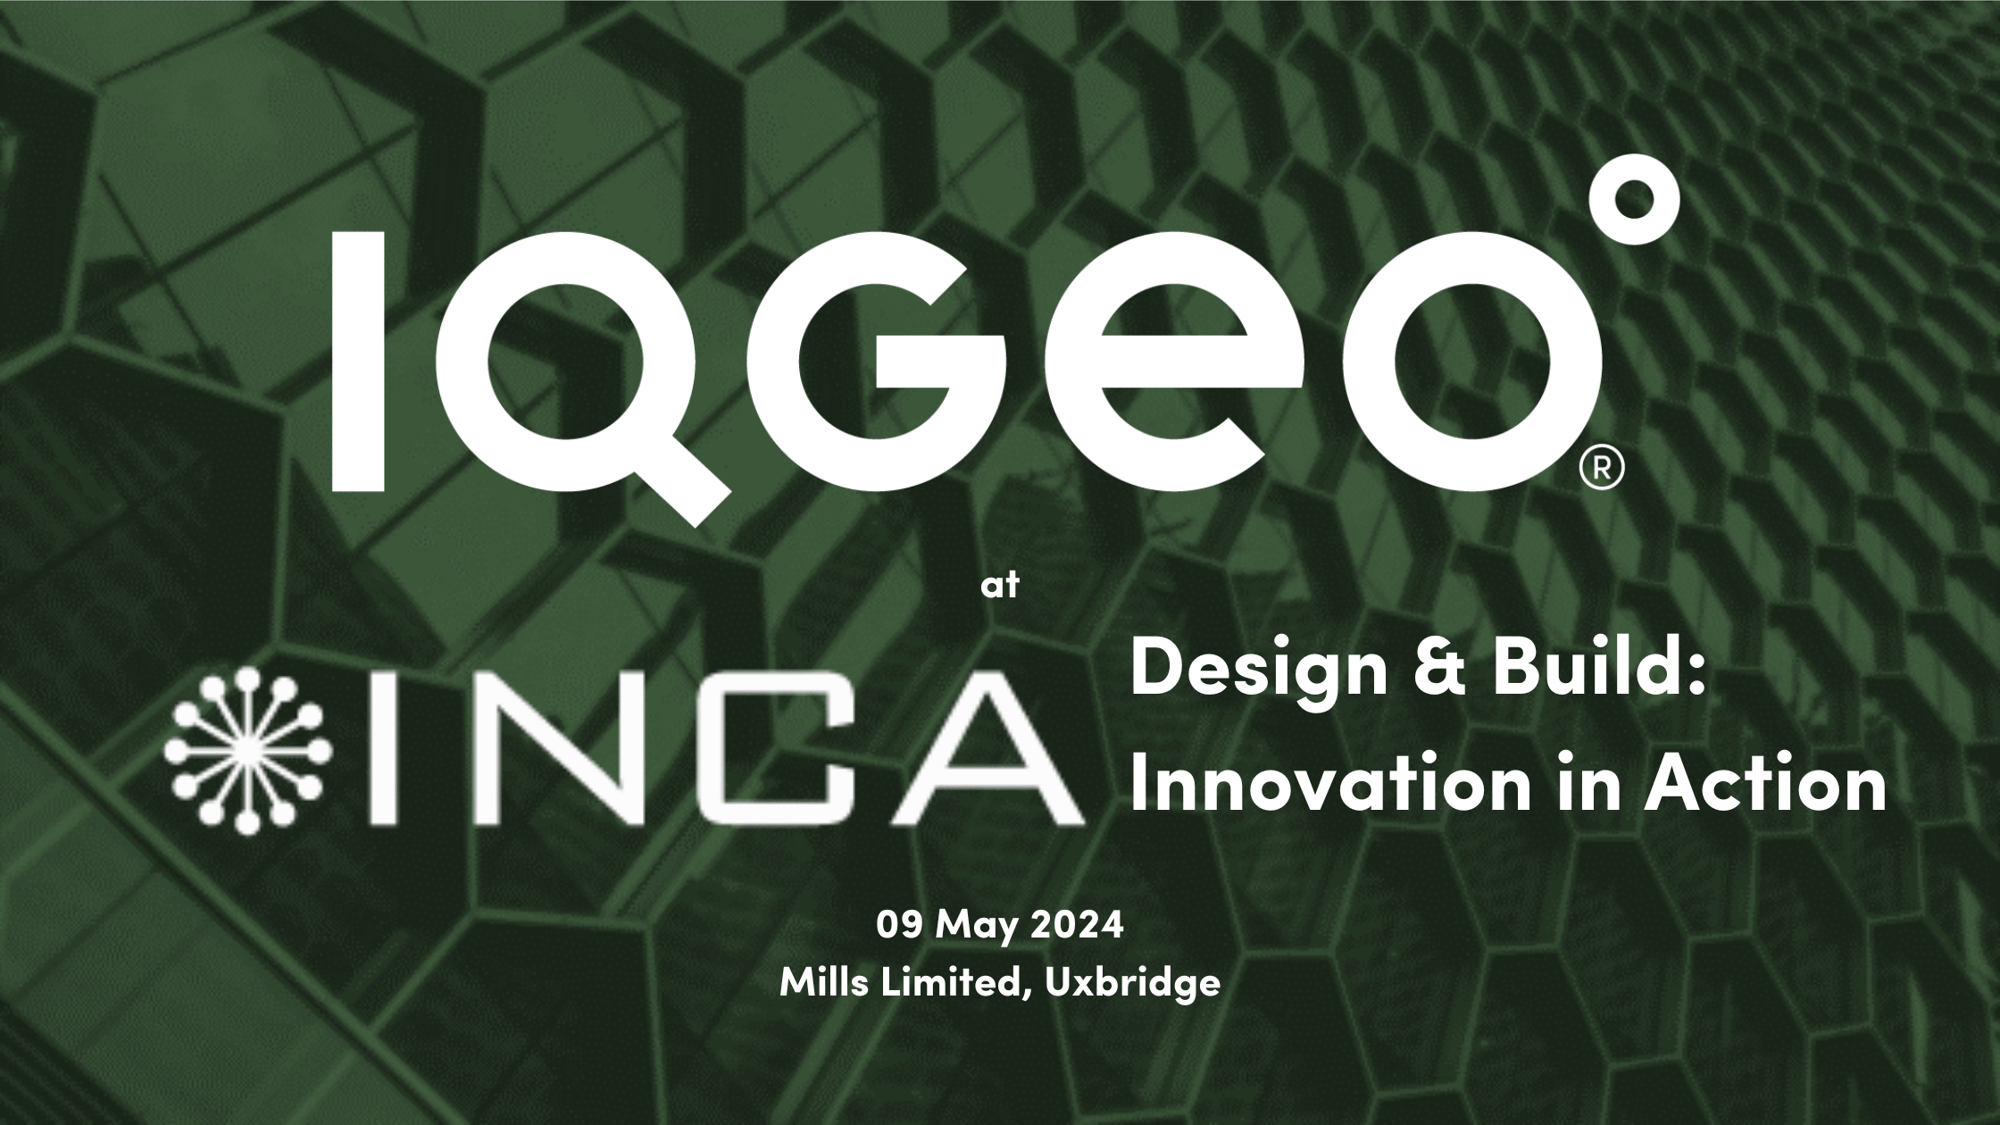 IQGeo-INCA-Design-Build-Event-09Apr24